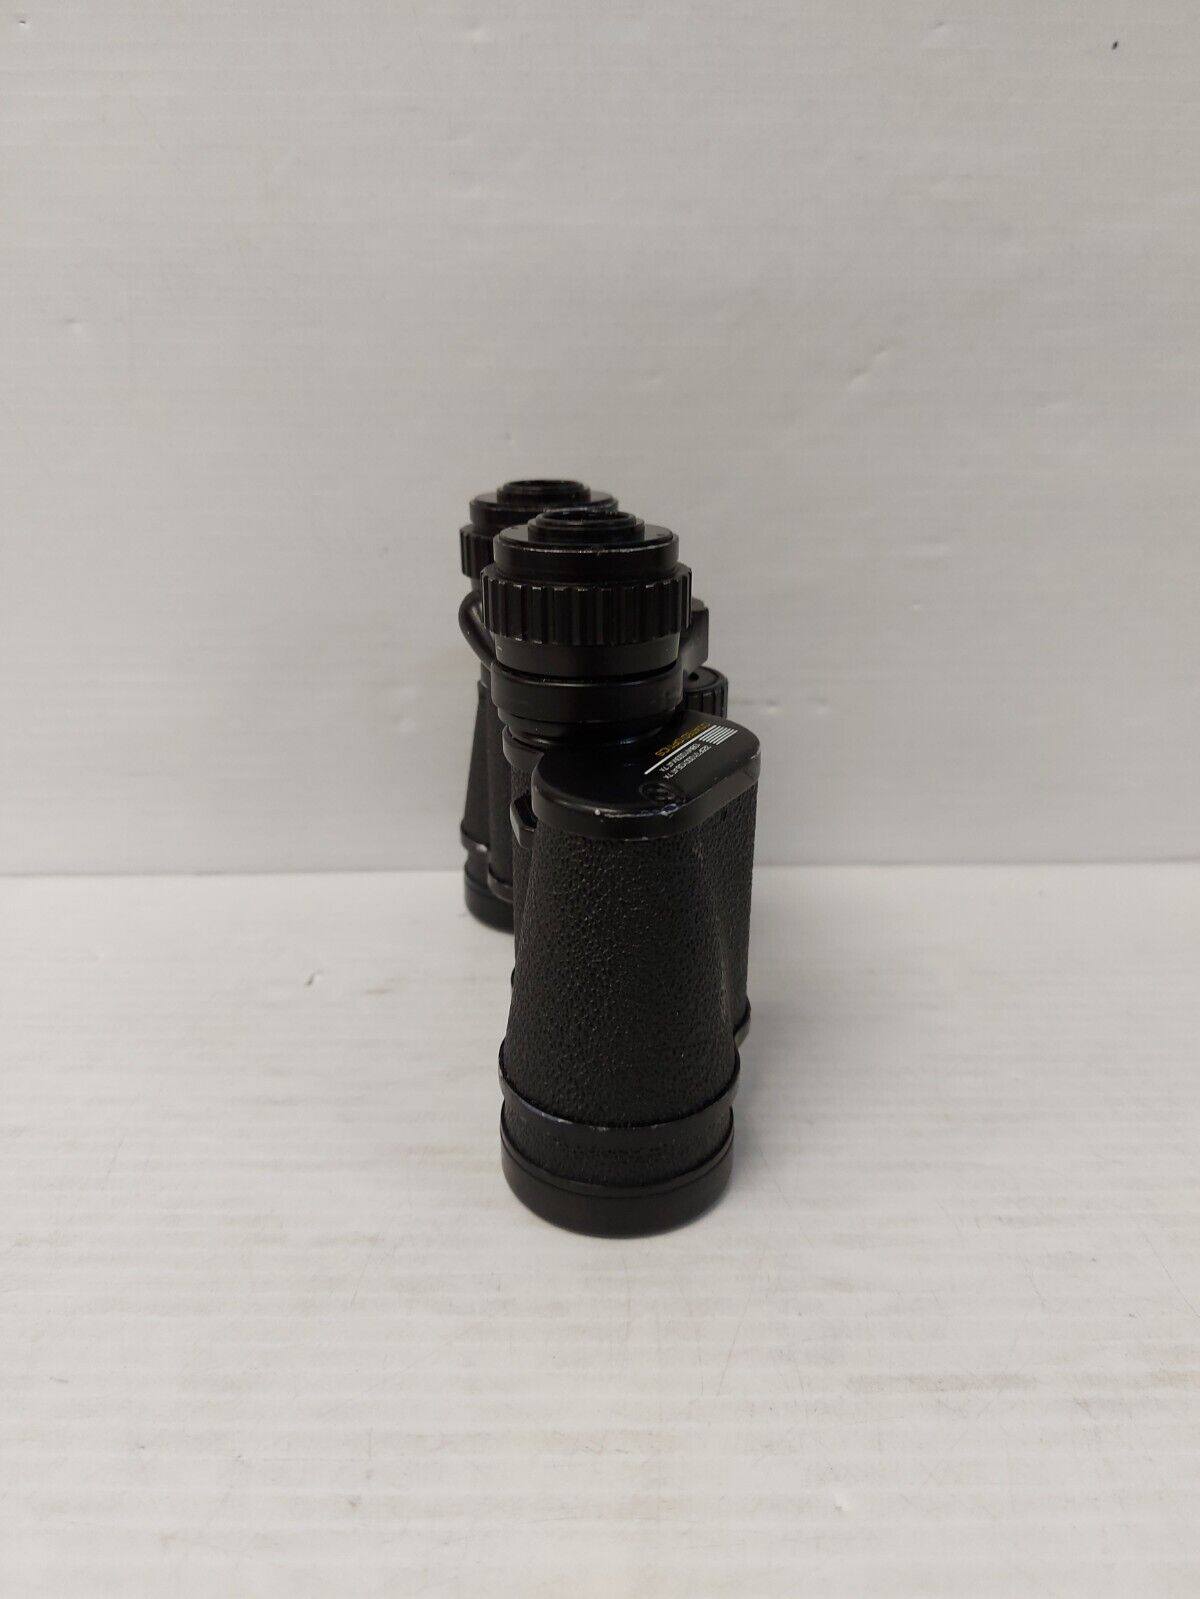 (N82035-1) Tasco 101C 7x-15x35 Zoom Binoculars